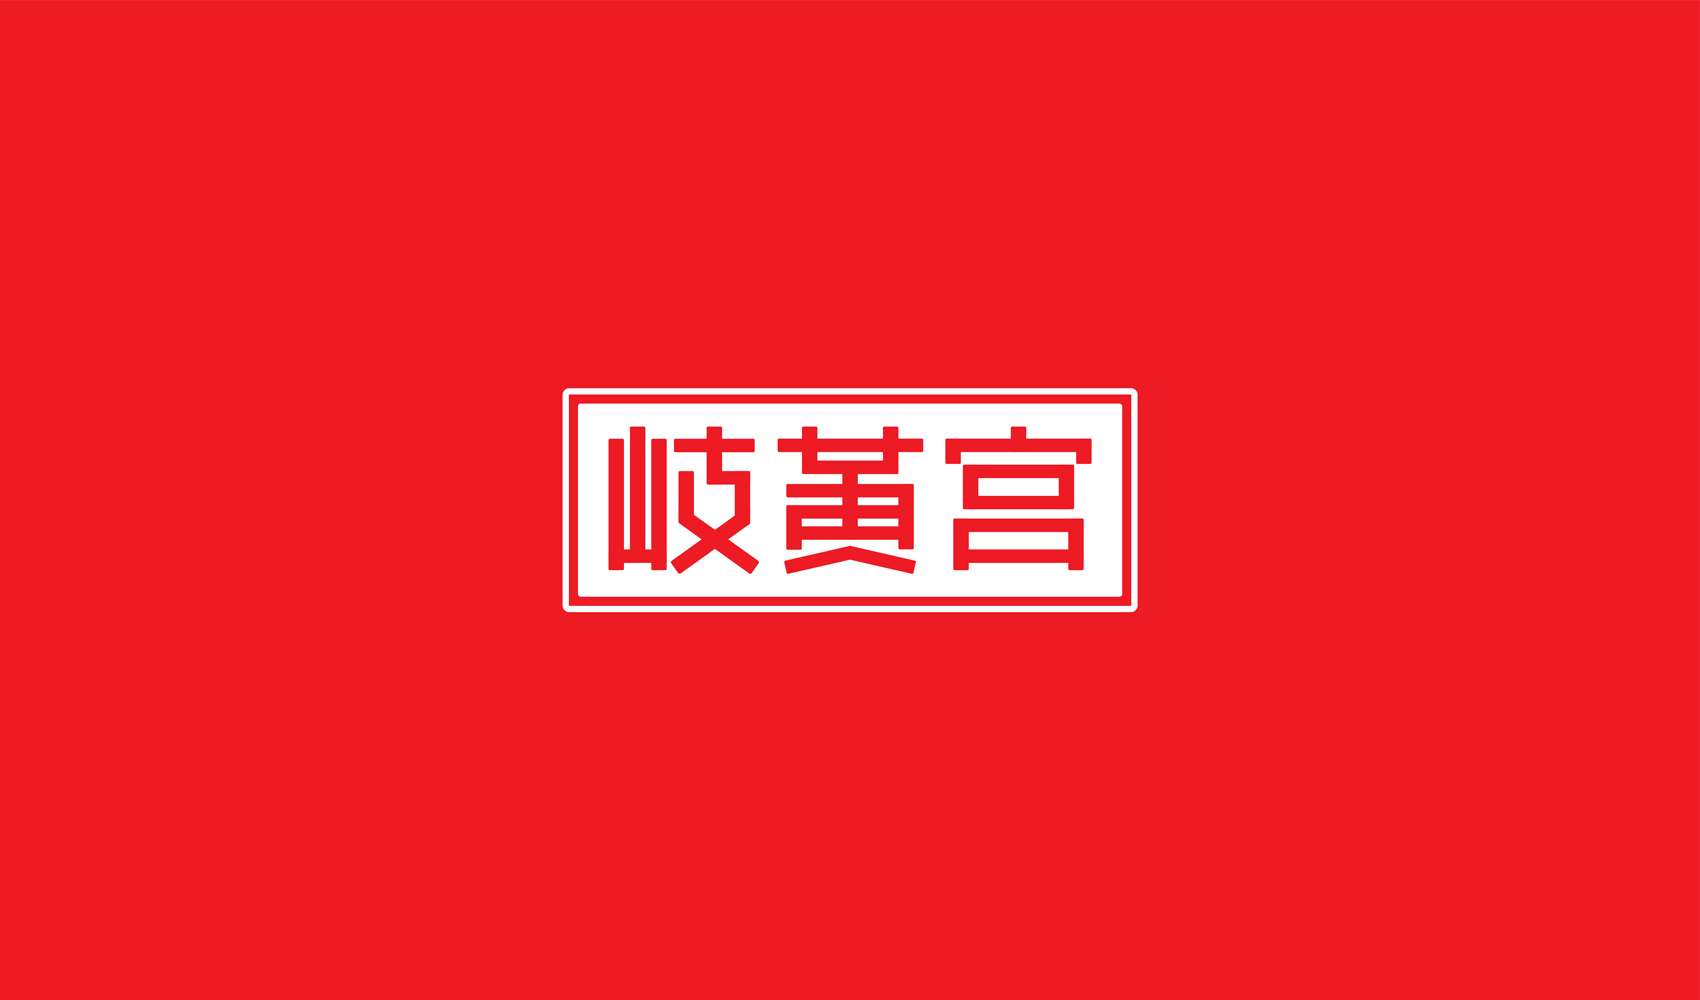 岐黄宫标志设计